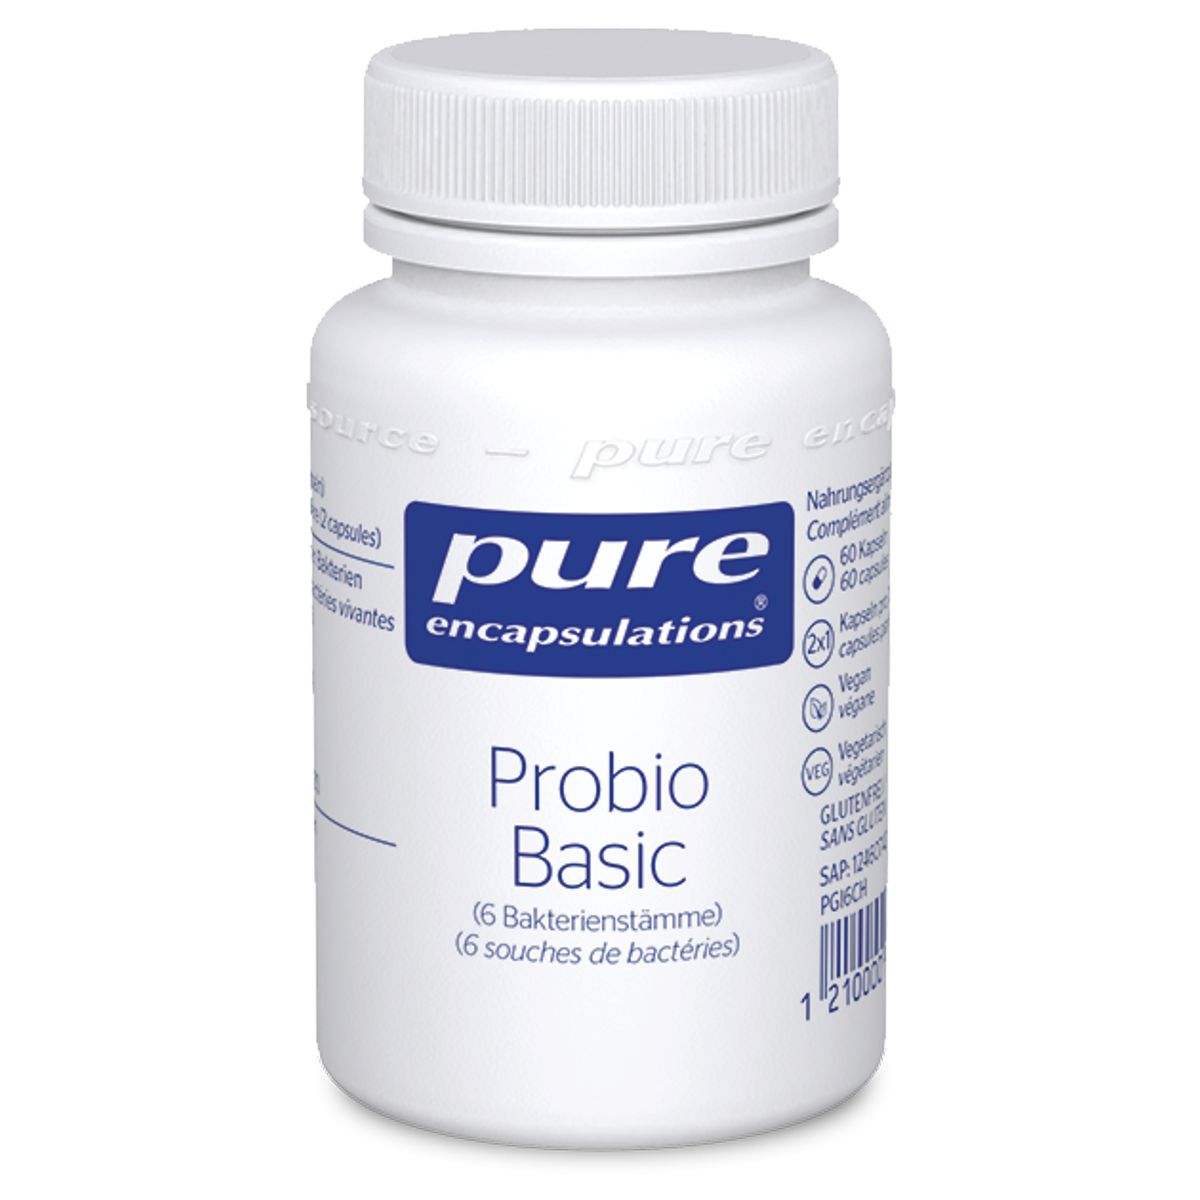 Probio Basic mit 6 Bakterienstämmen